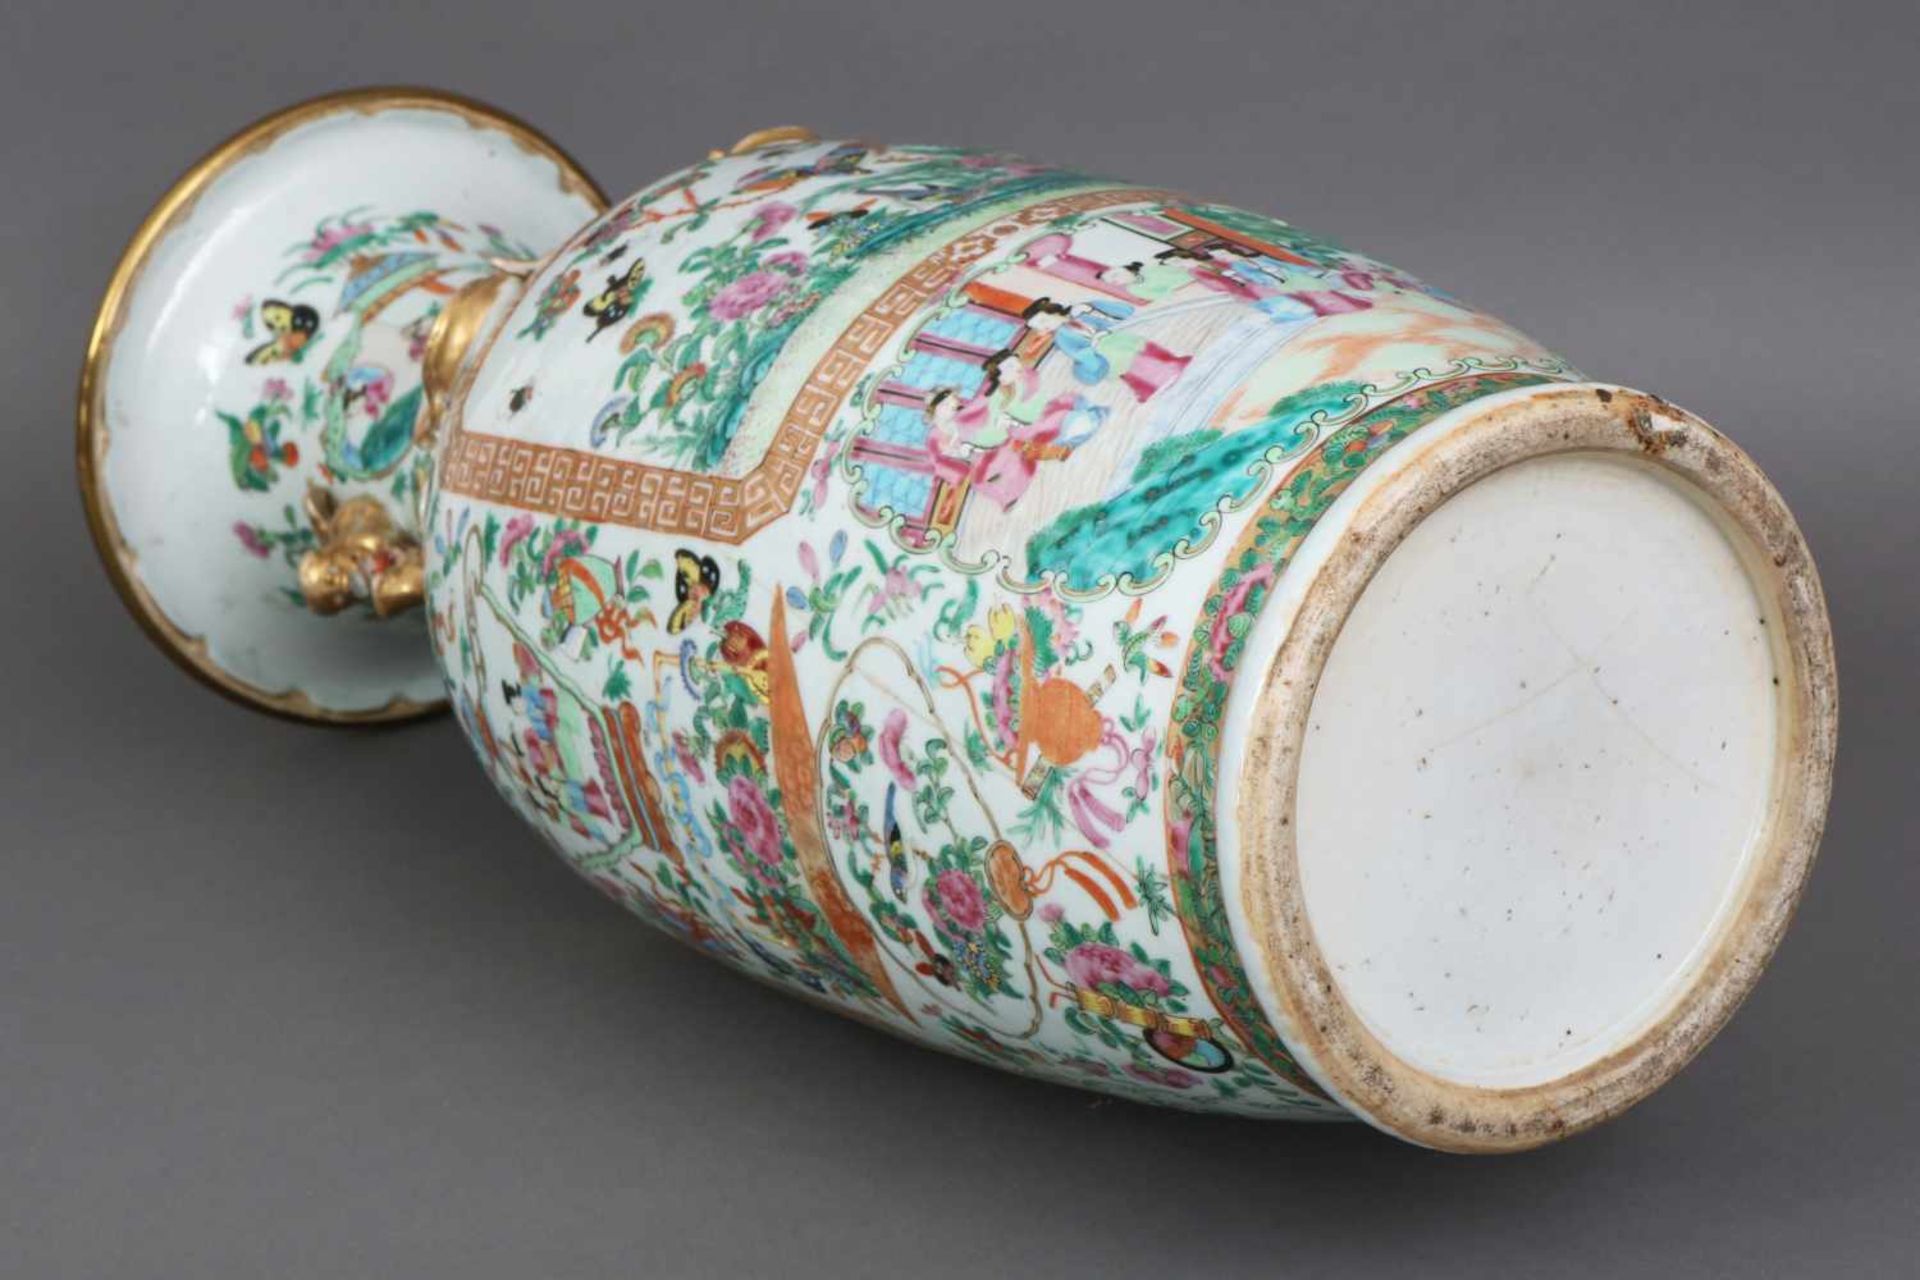 Chinesische VasePorzellan, späte Qing-Dynastie (1644-1912, hier um 1900), ¨famille rose¨-Dekor mit - Bild 2 aus 2